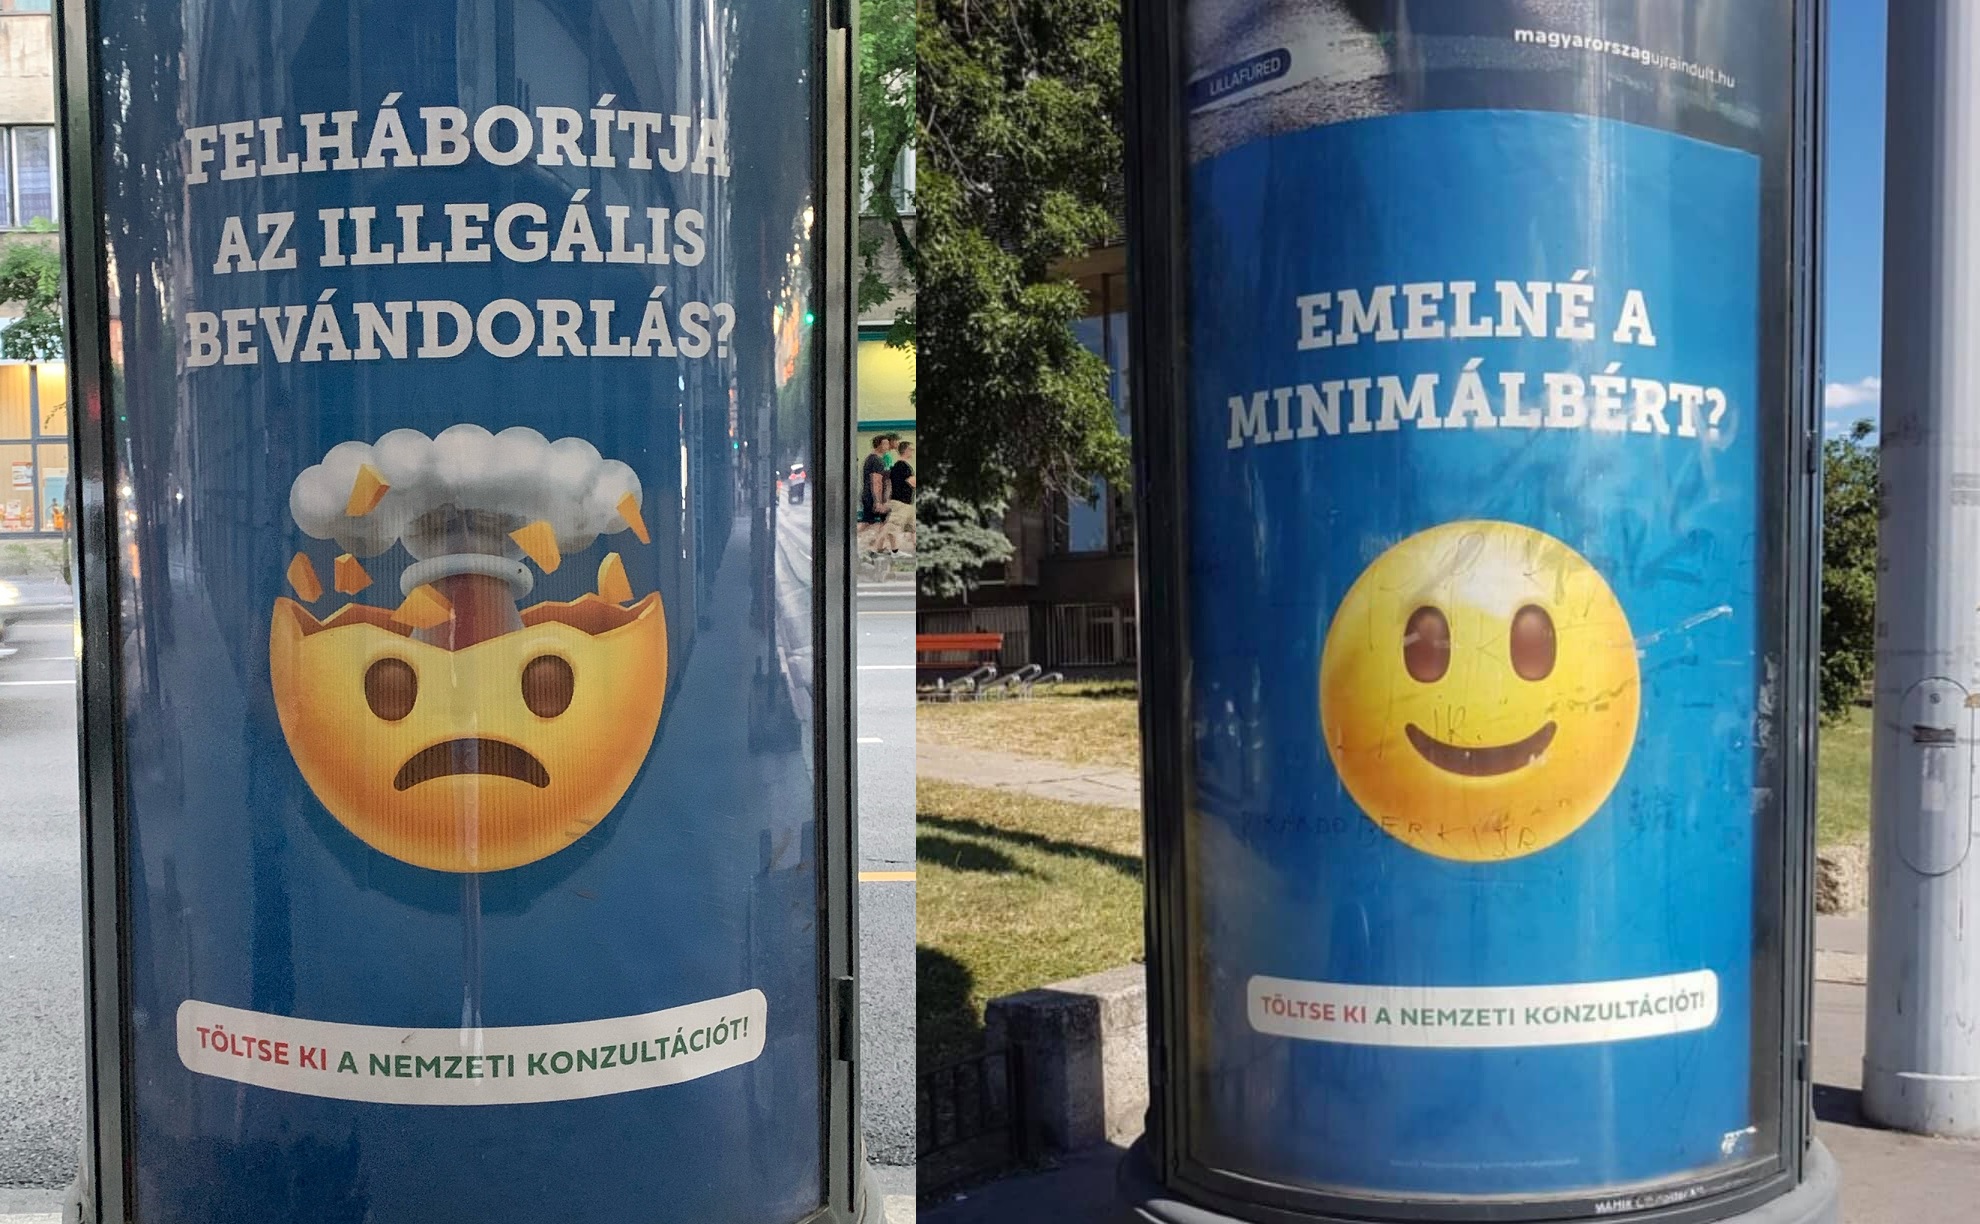 Ujjlenyomatot vett a rendőrség egy átragasztott kormányzati plakátról Pécsen